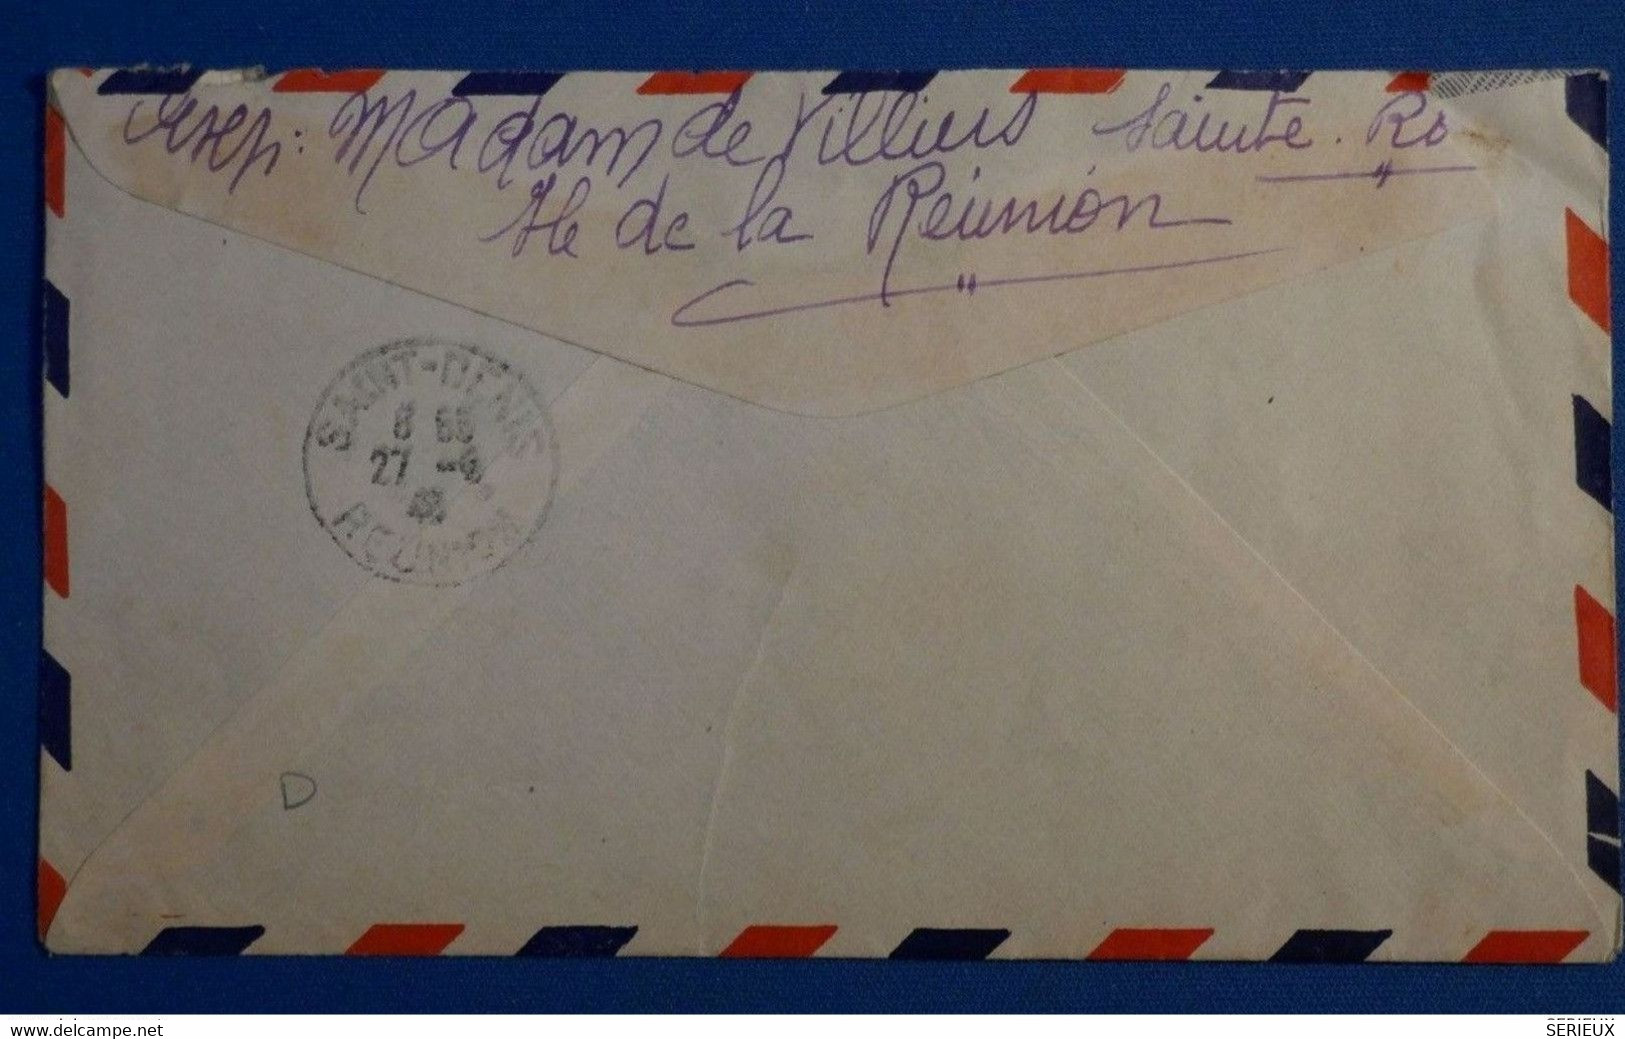 Q8 LA REUNION BELLE LETTRE 1946 PAR AVION PETIT BUREAU SAINTE ROSE POUR PARIS FRANCE+ PAIRE DE TP + AFFRANCHIS. PLAISANT - Storia Postale